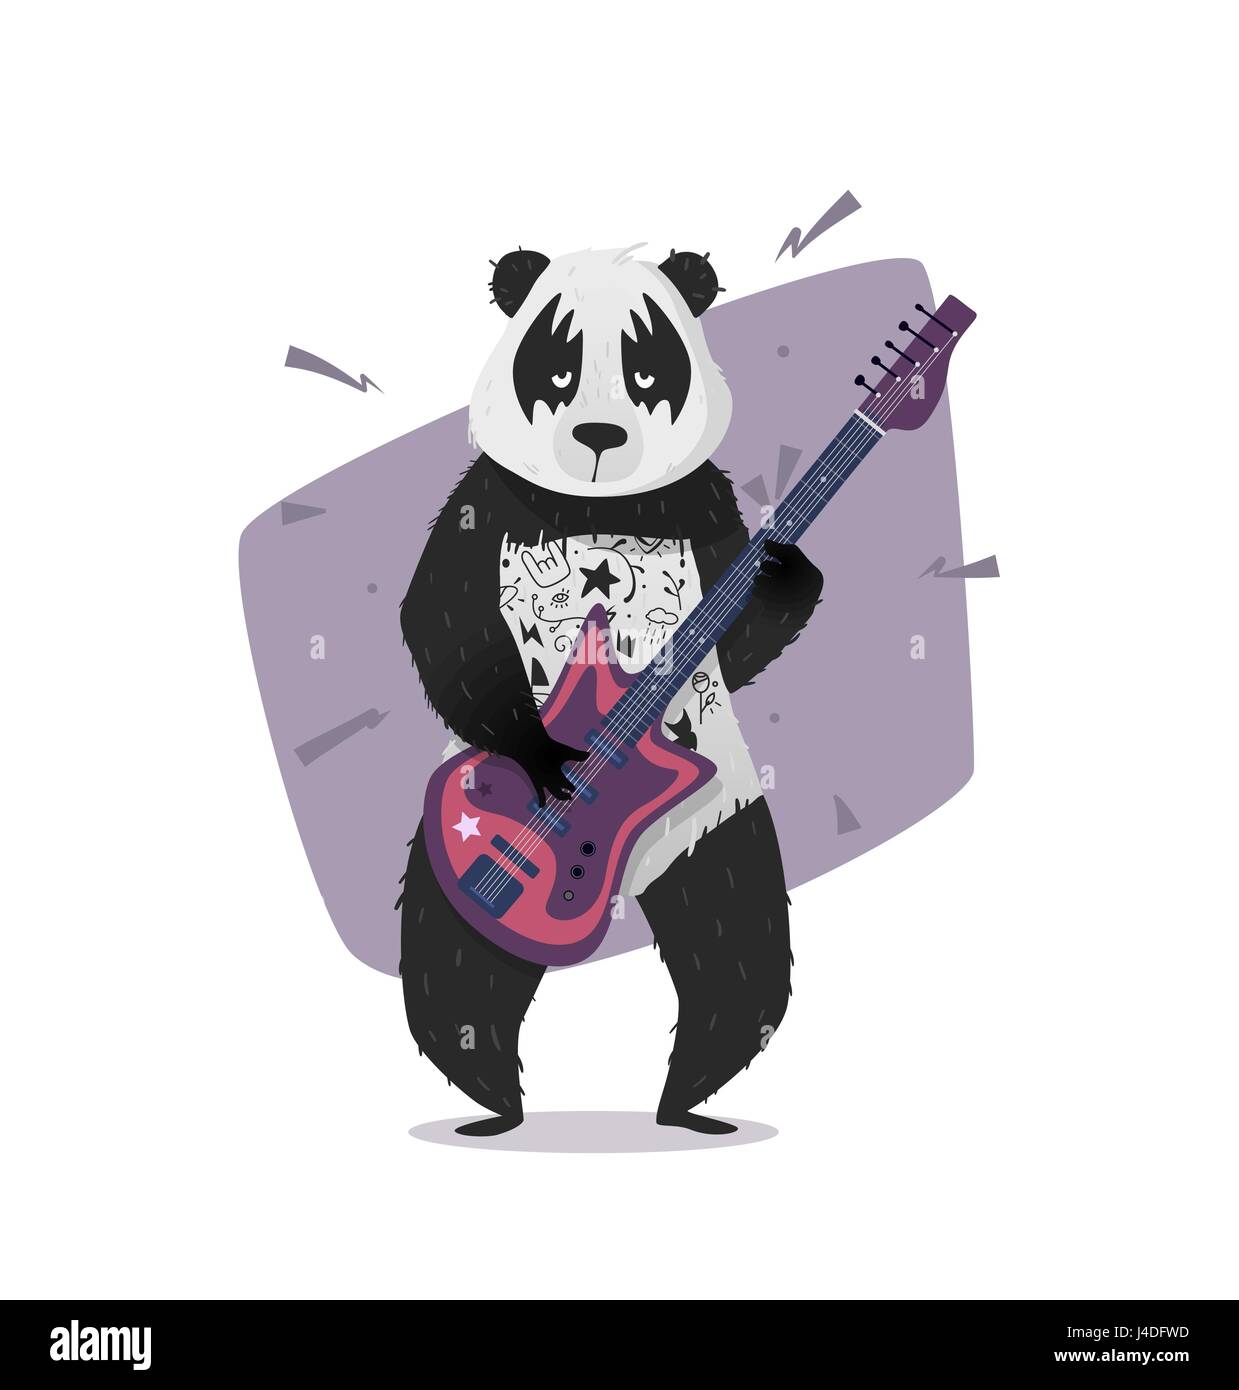 Rocker-Panda, Gitarre zu spielen. Vektor-Illustration für auf ein T-shirt, Cover, Poster drucken. Hipster-Panda. Stock Vektor